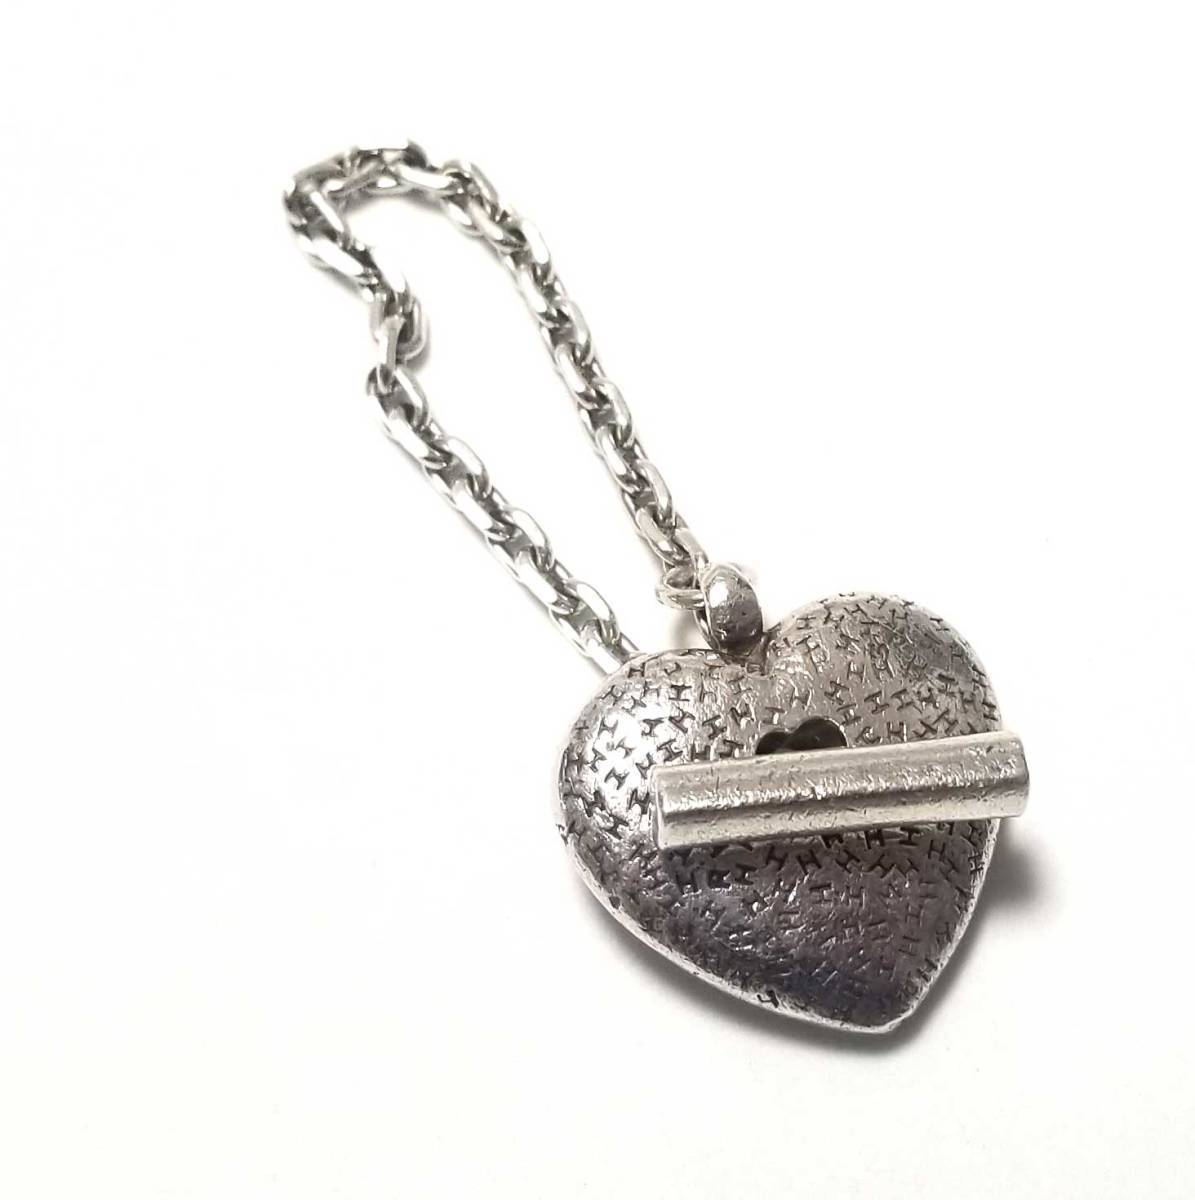  Hermes в форме сердечка Heart H Mark цепочка для ключей брелок для ключа серебряный 925 HERMES сумка очарование 